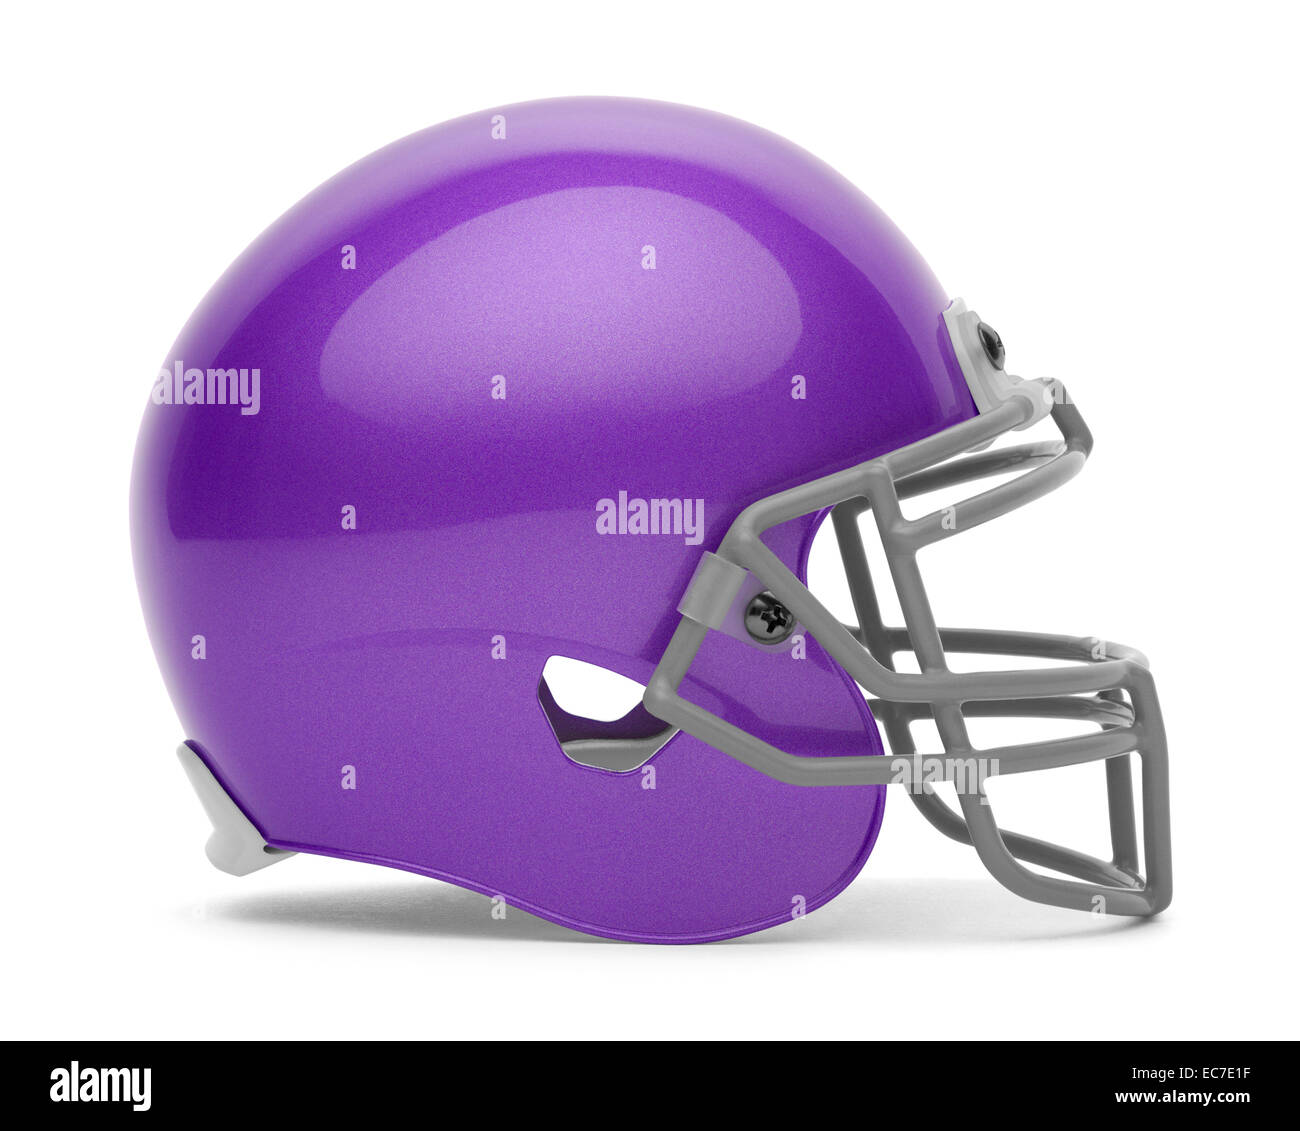 Vista lateral del casco de fútbol americano púrpura con copia espacio aislado sobre fondo blanco. Foto de stock